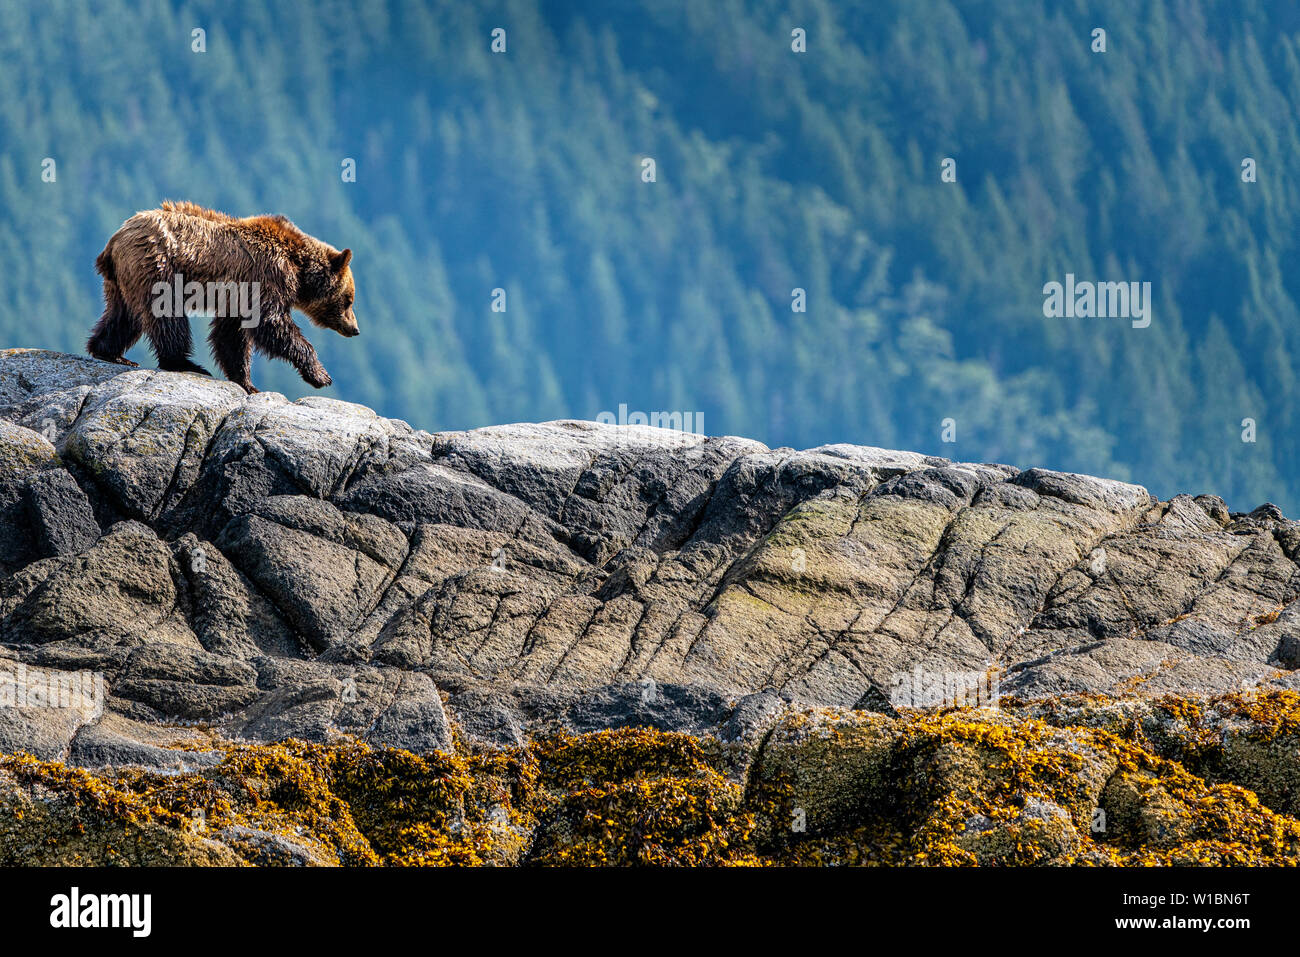 Grizzly Bär zu Fuß auf einer kleinen Insel im schönen Knight Inlet, erste Nationen Territorium, Great Bear Rainforest, British Columbia, Kanada. Stockfoto